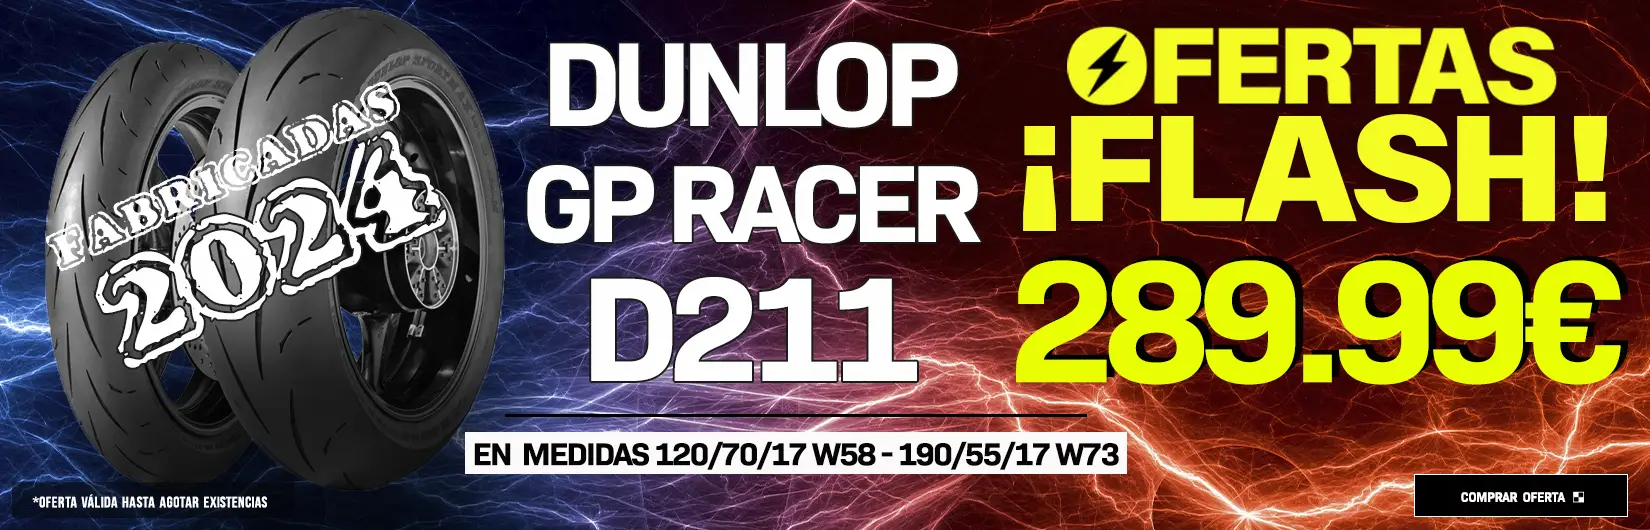 Promocion dunlop gp racervd211